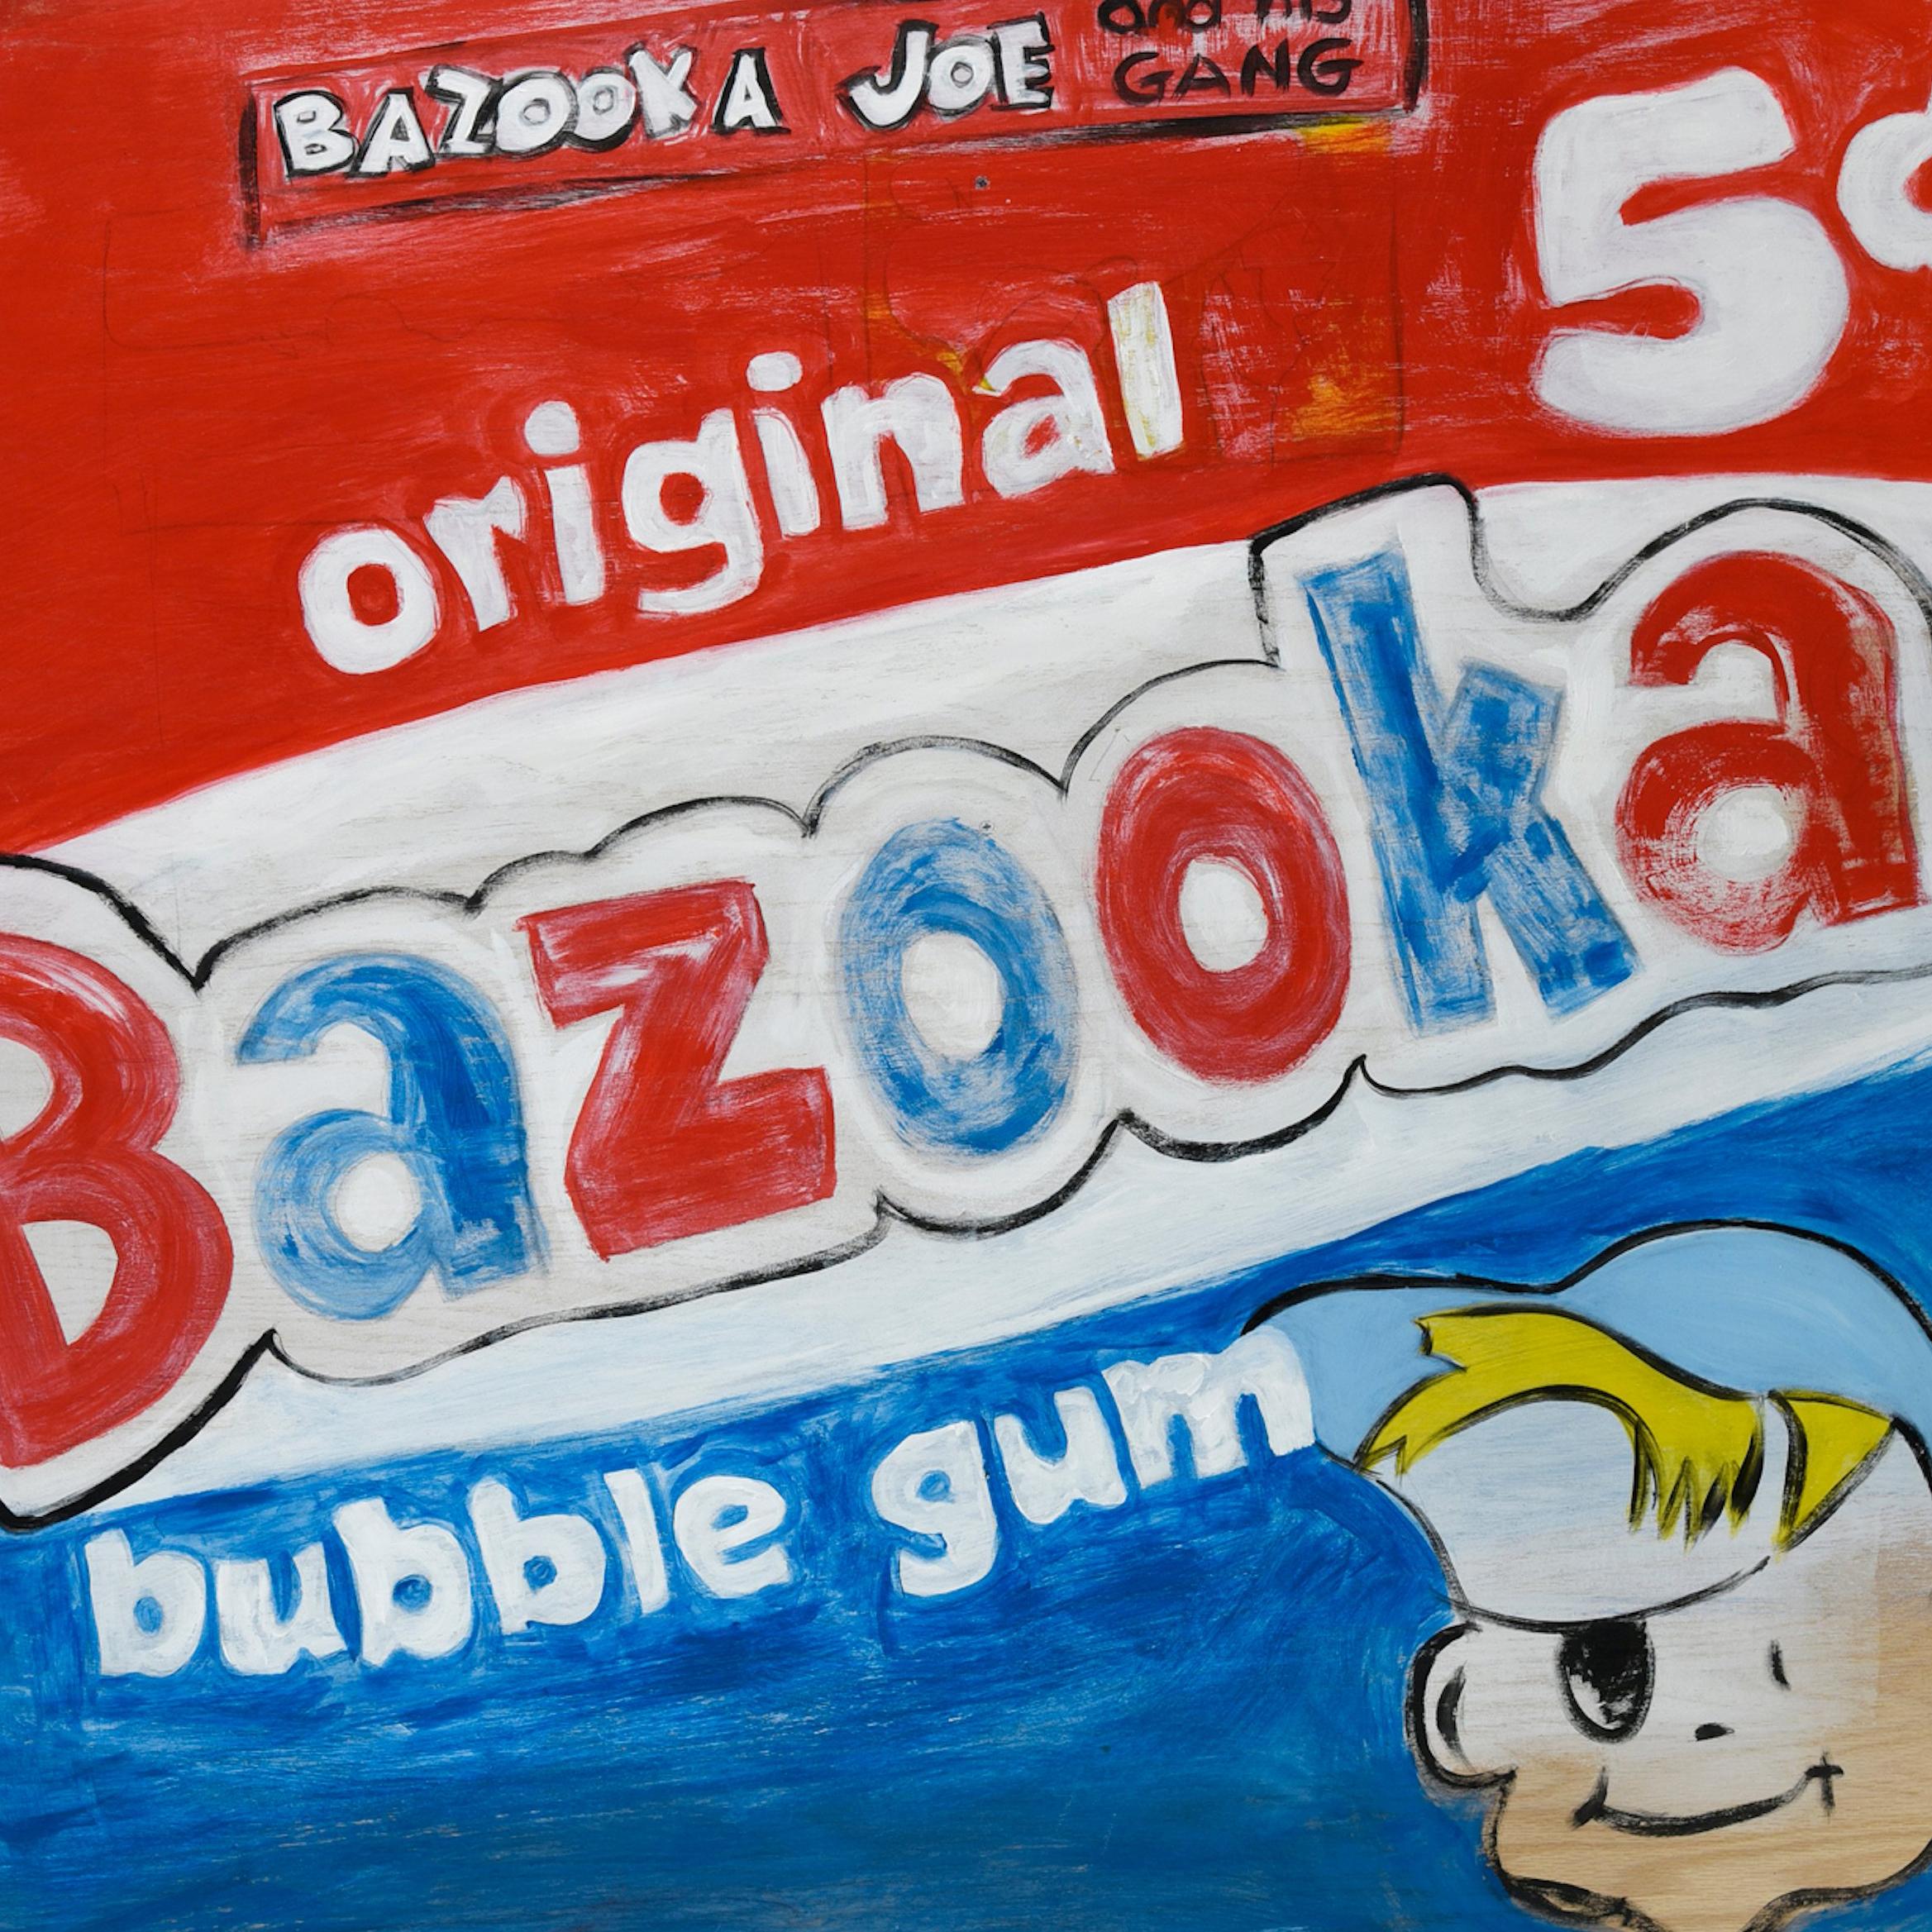 bazooka for sale